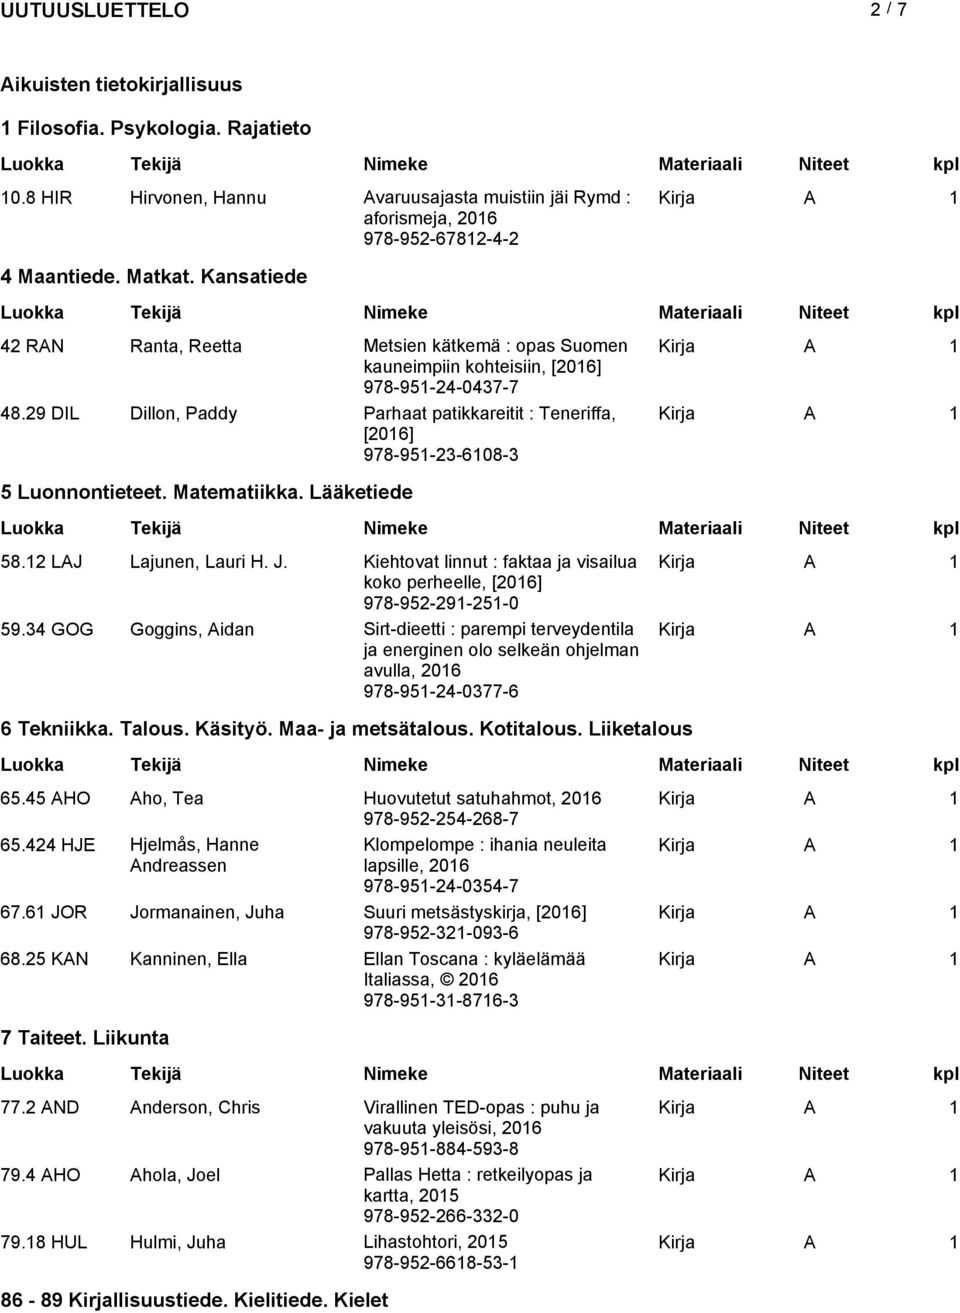 Matematiikka. Lääketiede 58.12 LAJ Lajunen, Lauri H. J. Kiehtovat linnut : faktaa ja visailua koko perheelle, 978-952-291-251-0 59.